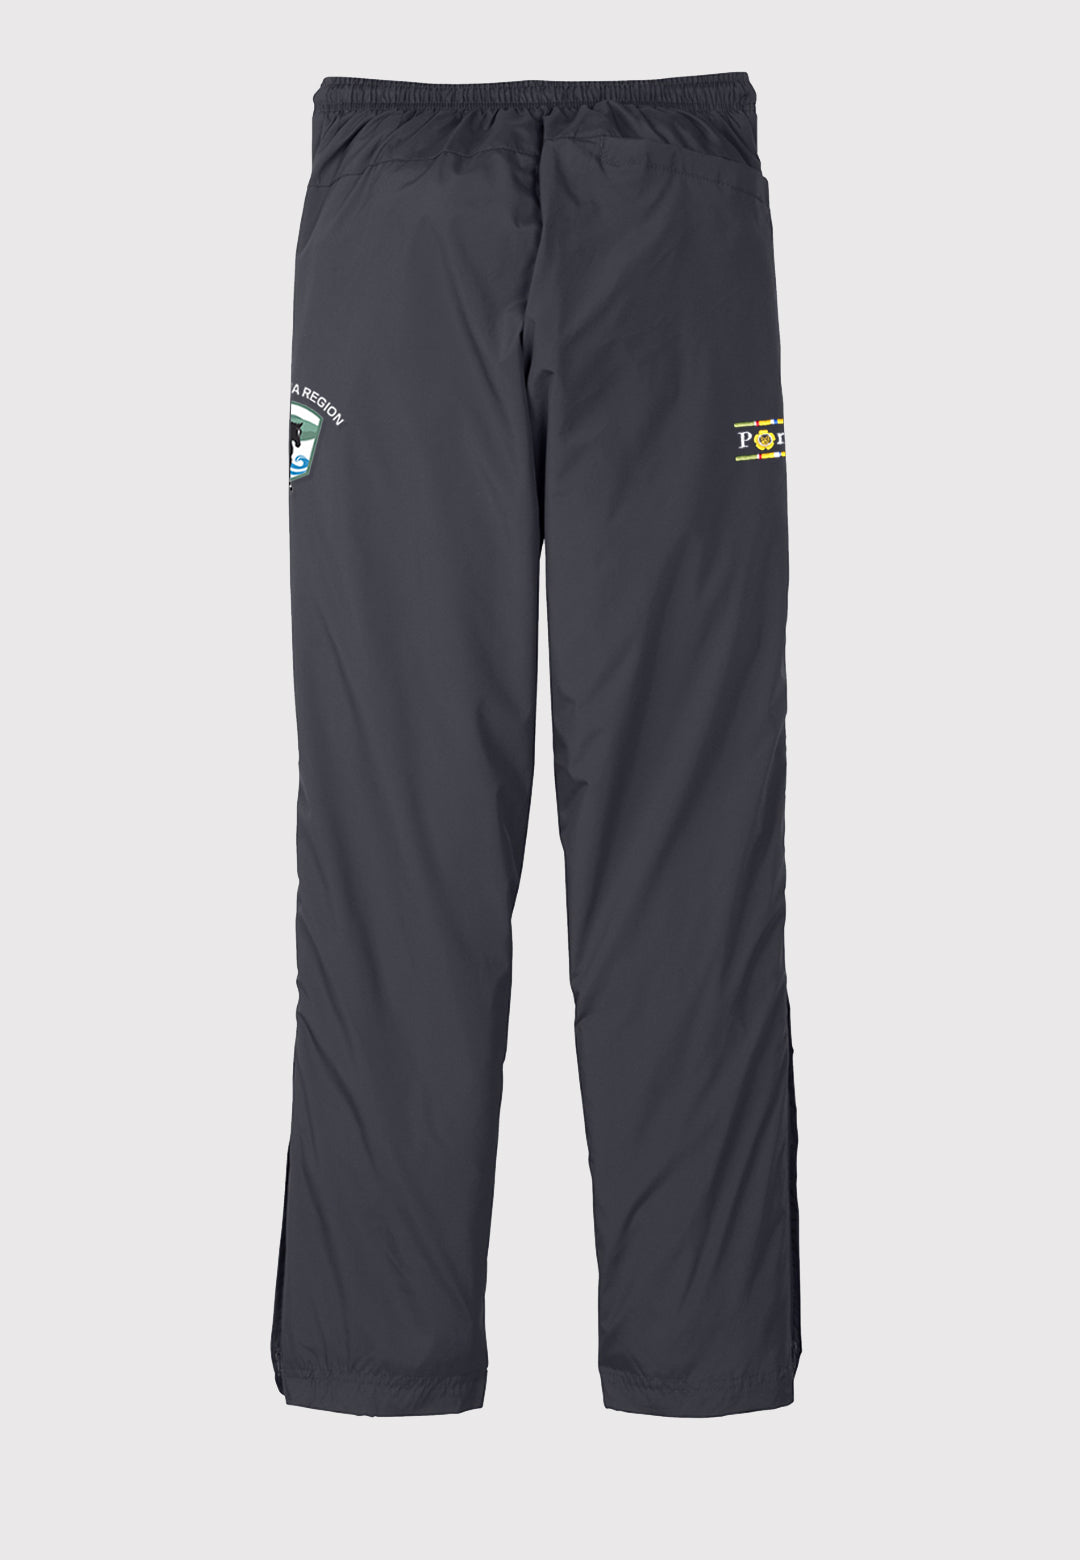 Carolina Region USPC Sport-Tek® Pull-On Wind Pant (Unisex) - Adult Sizes, 2 Color Options